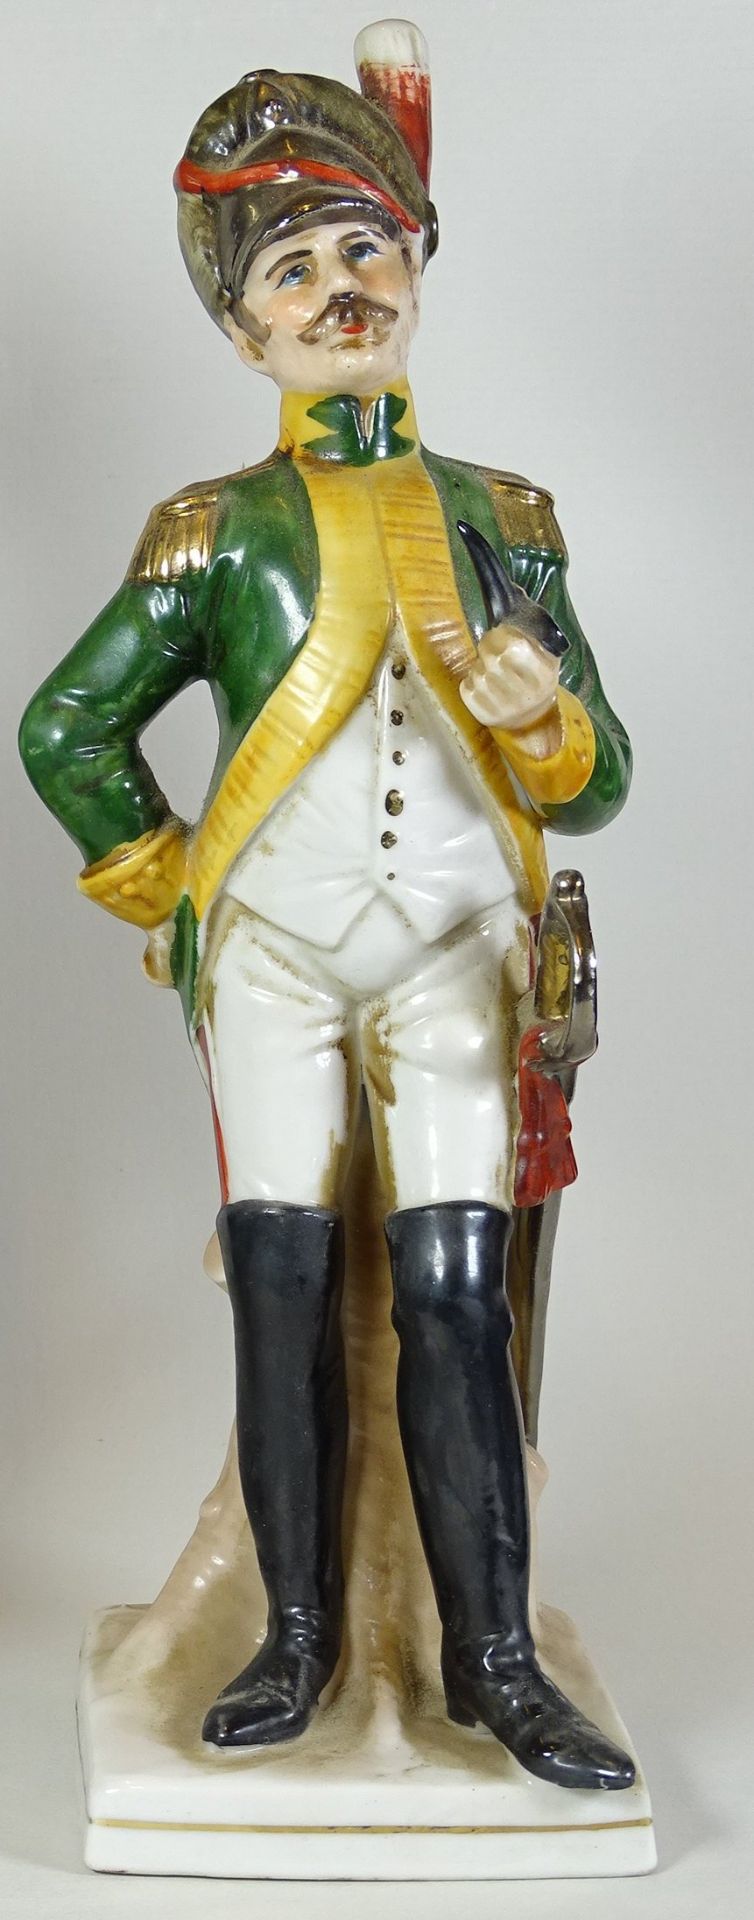 Offizier Figur mit Pfeife,ungemarkt, H. 25cm,Alters- und Gebrauchsspuren - Bild 2 aus 4